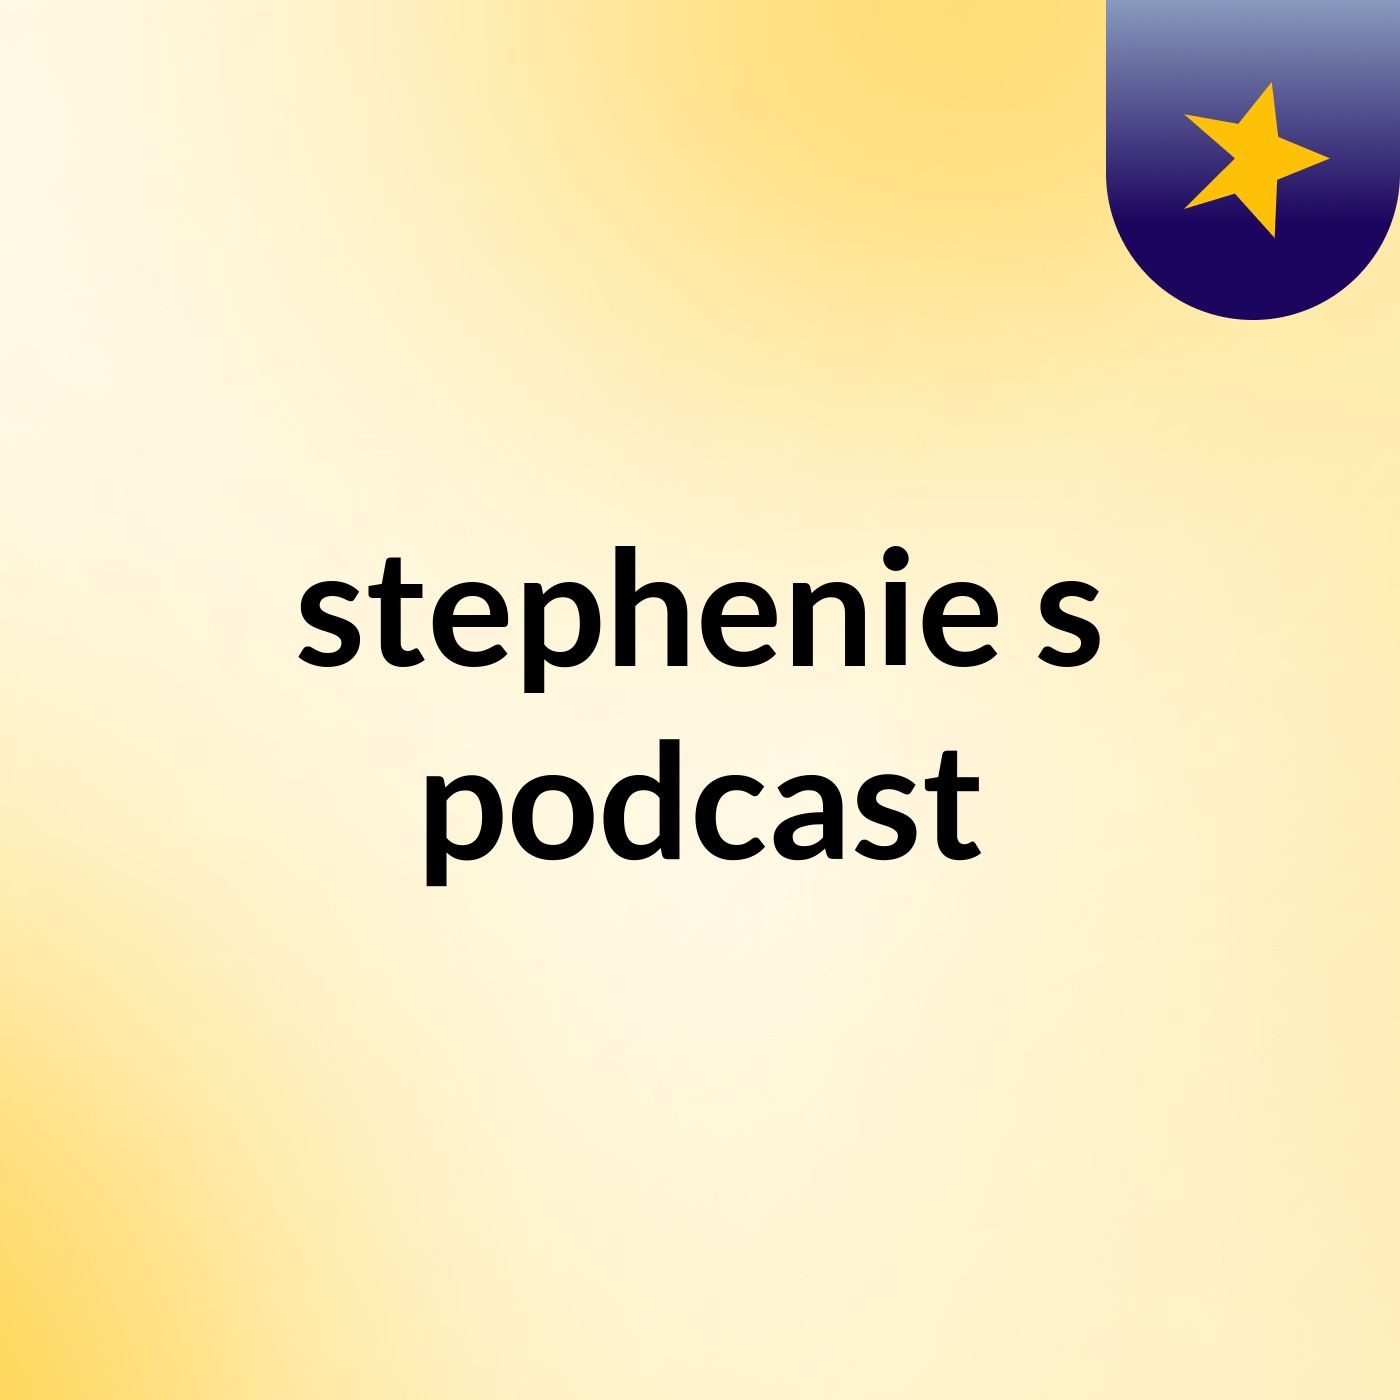 stephenie's podcast